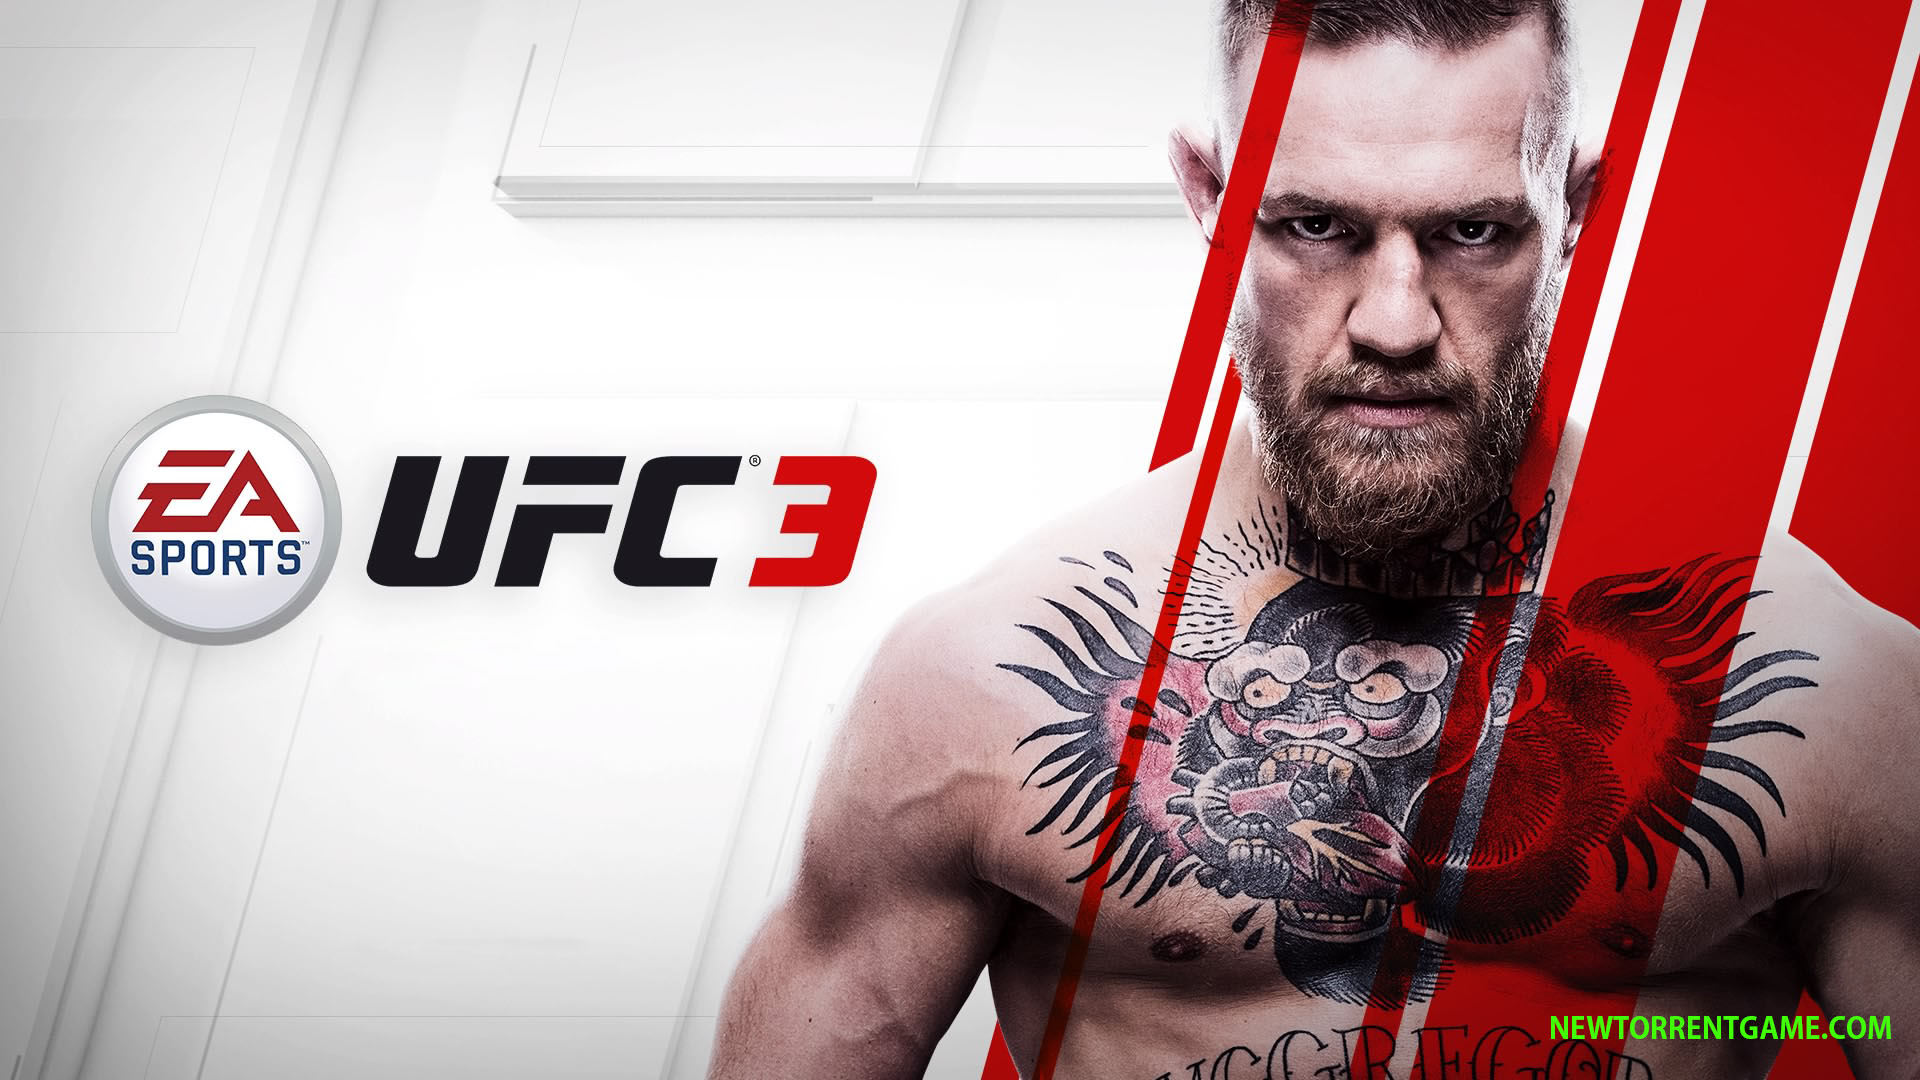 EA SPORTS UFC 3 PC DOWNLOAD